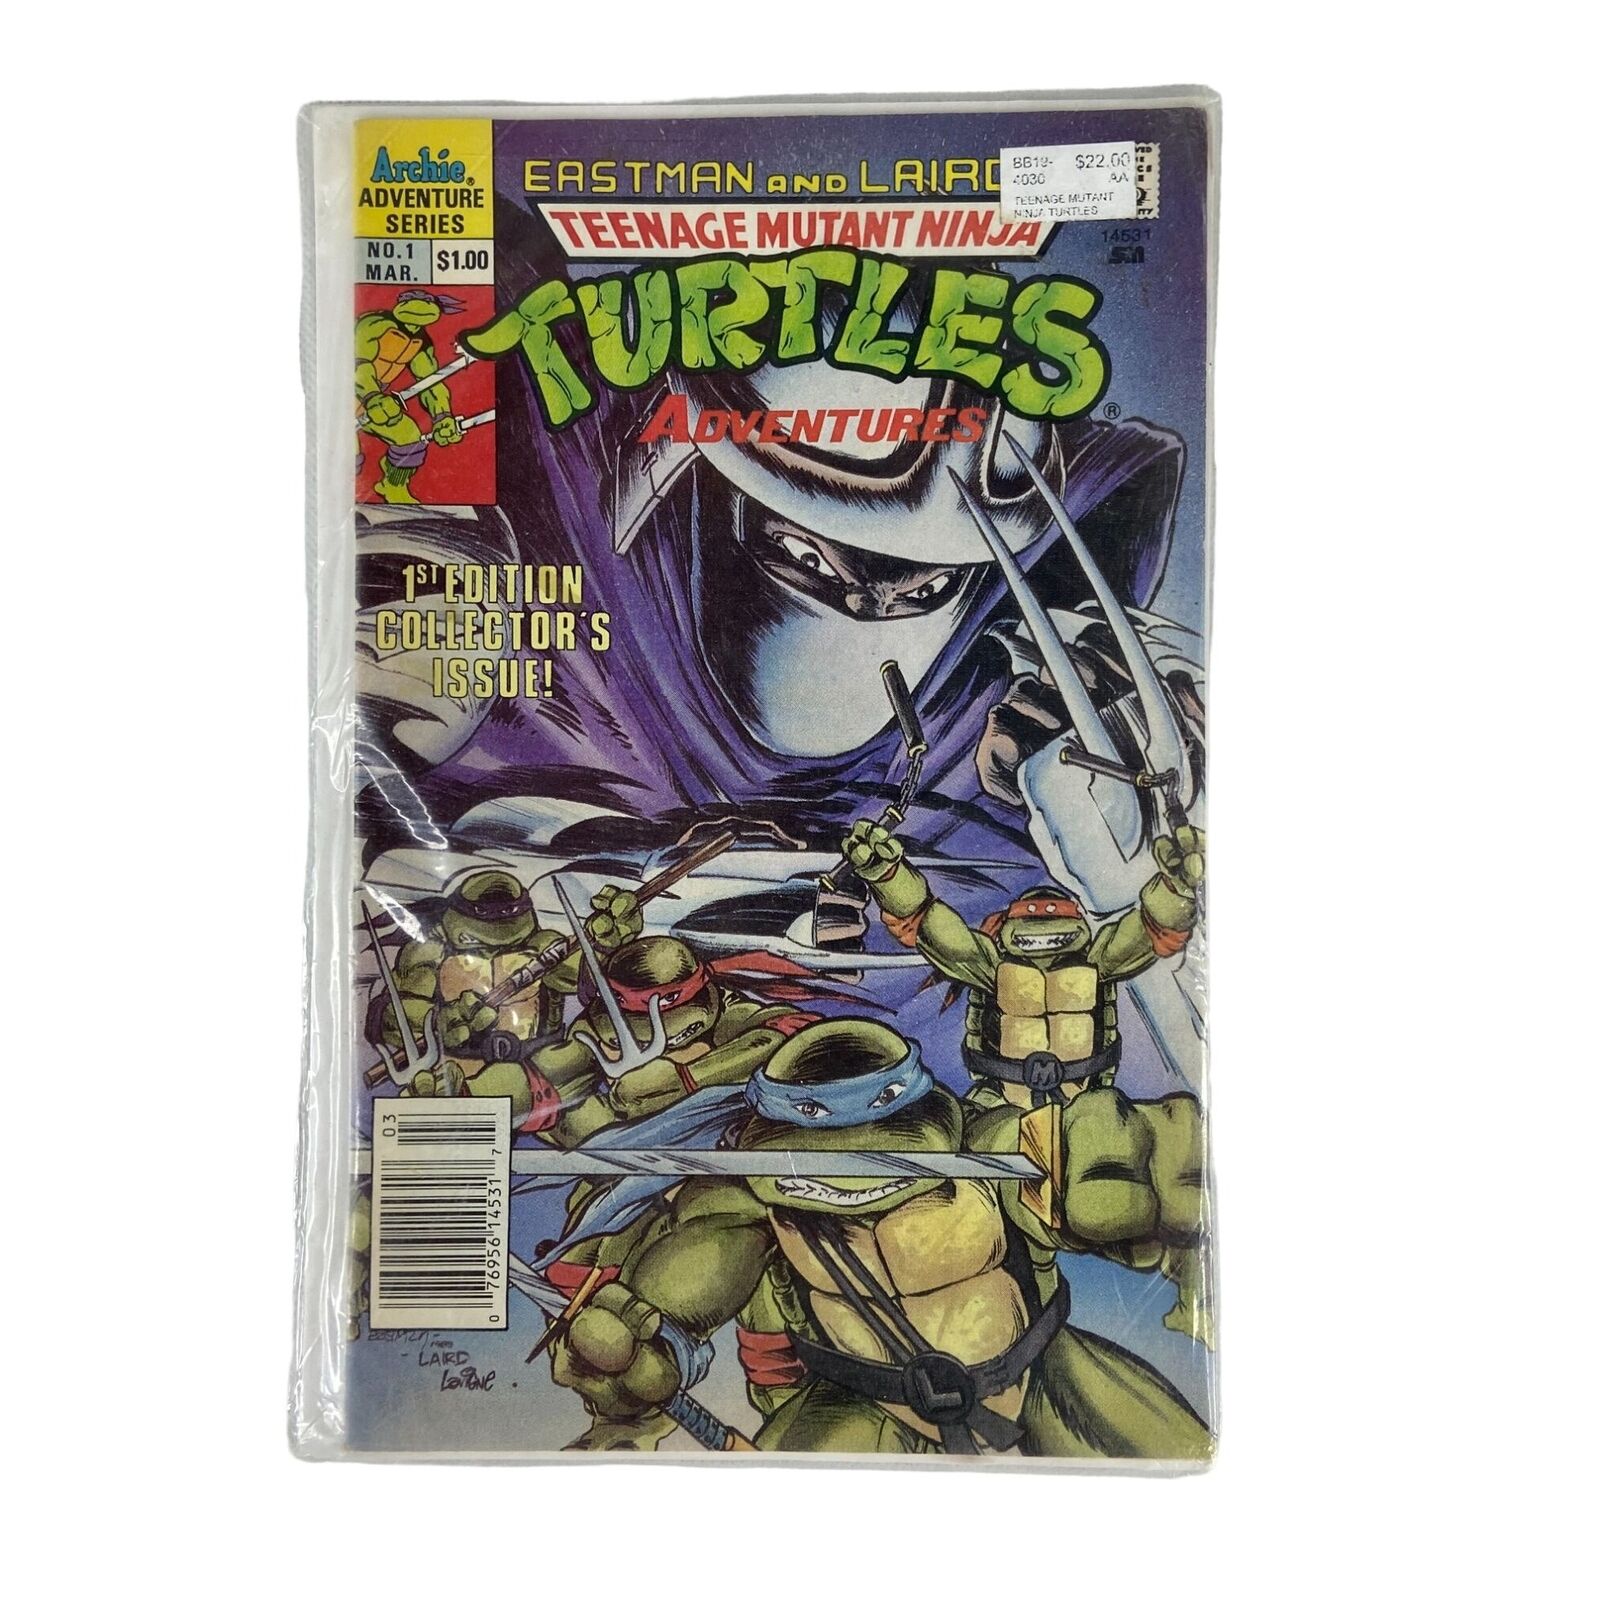 Teenage Mutant Ninja Turtles Comic Number 1 March 1989 Archie Adventure Series